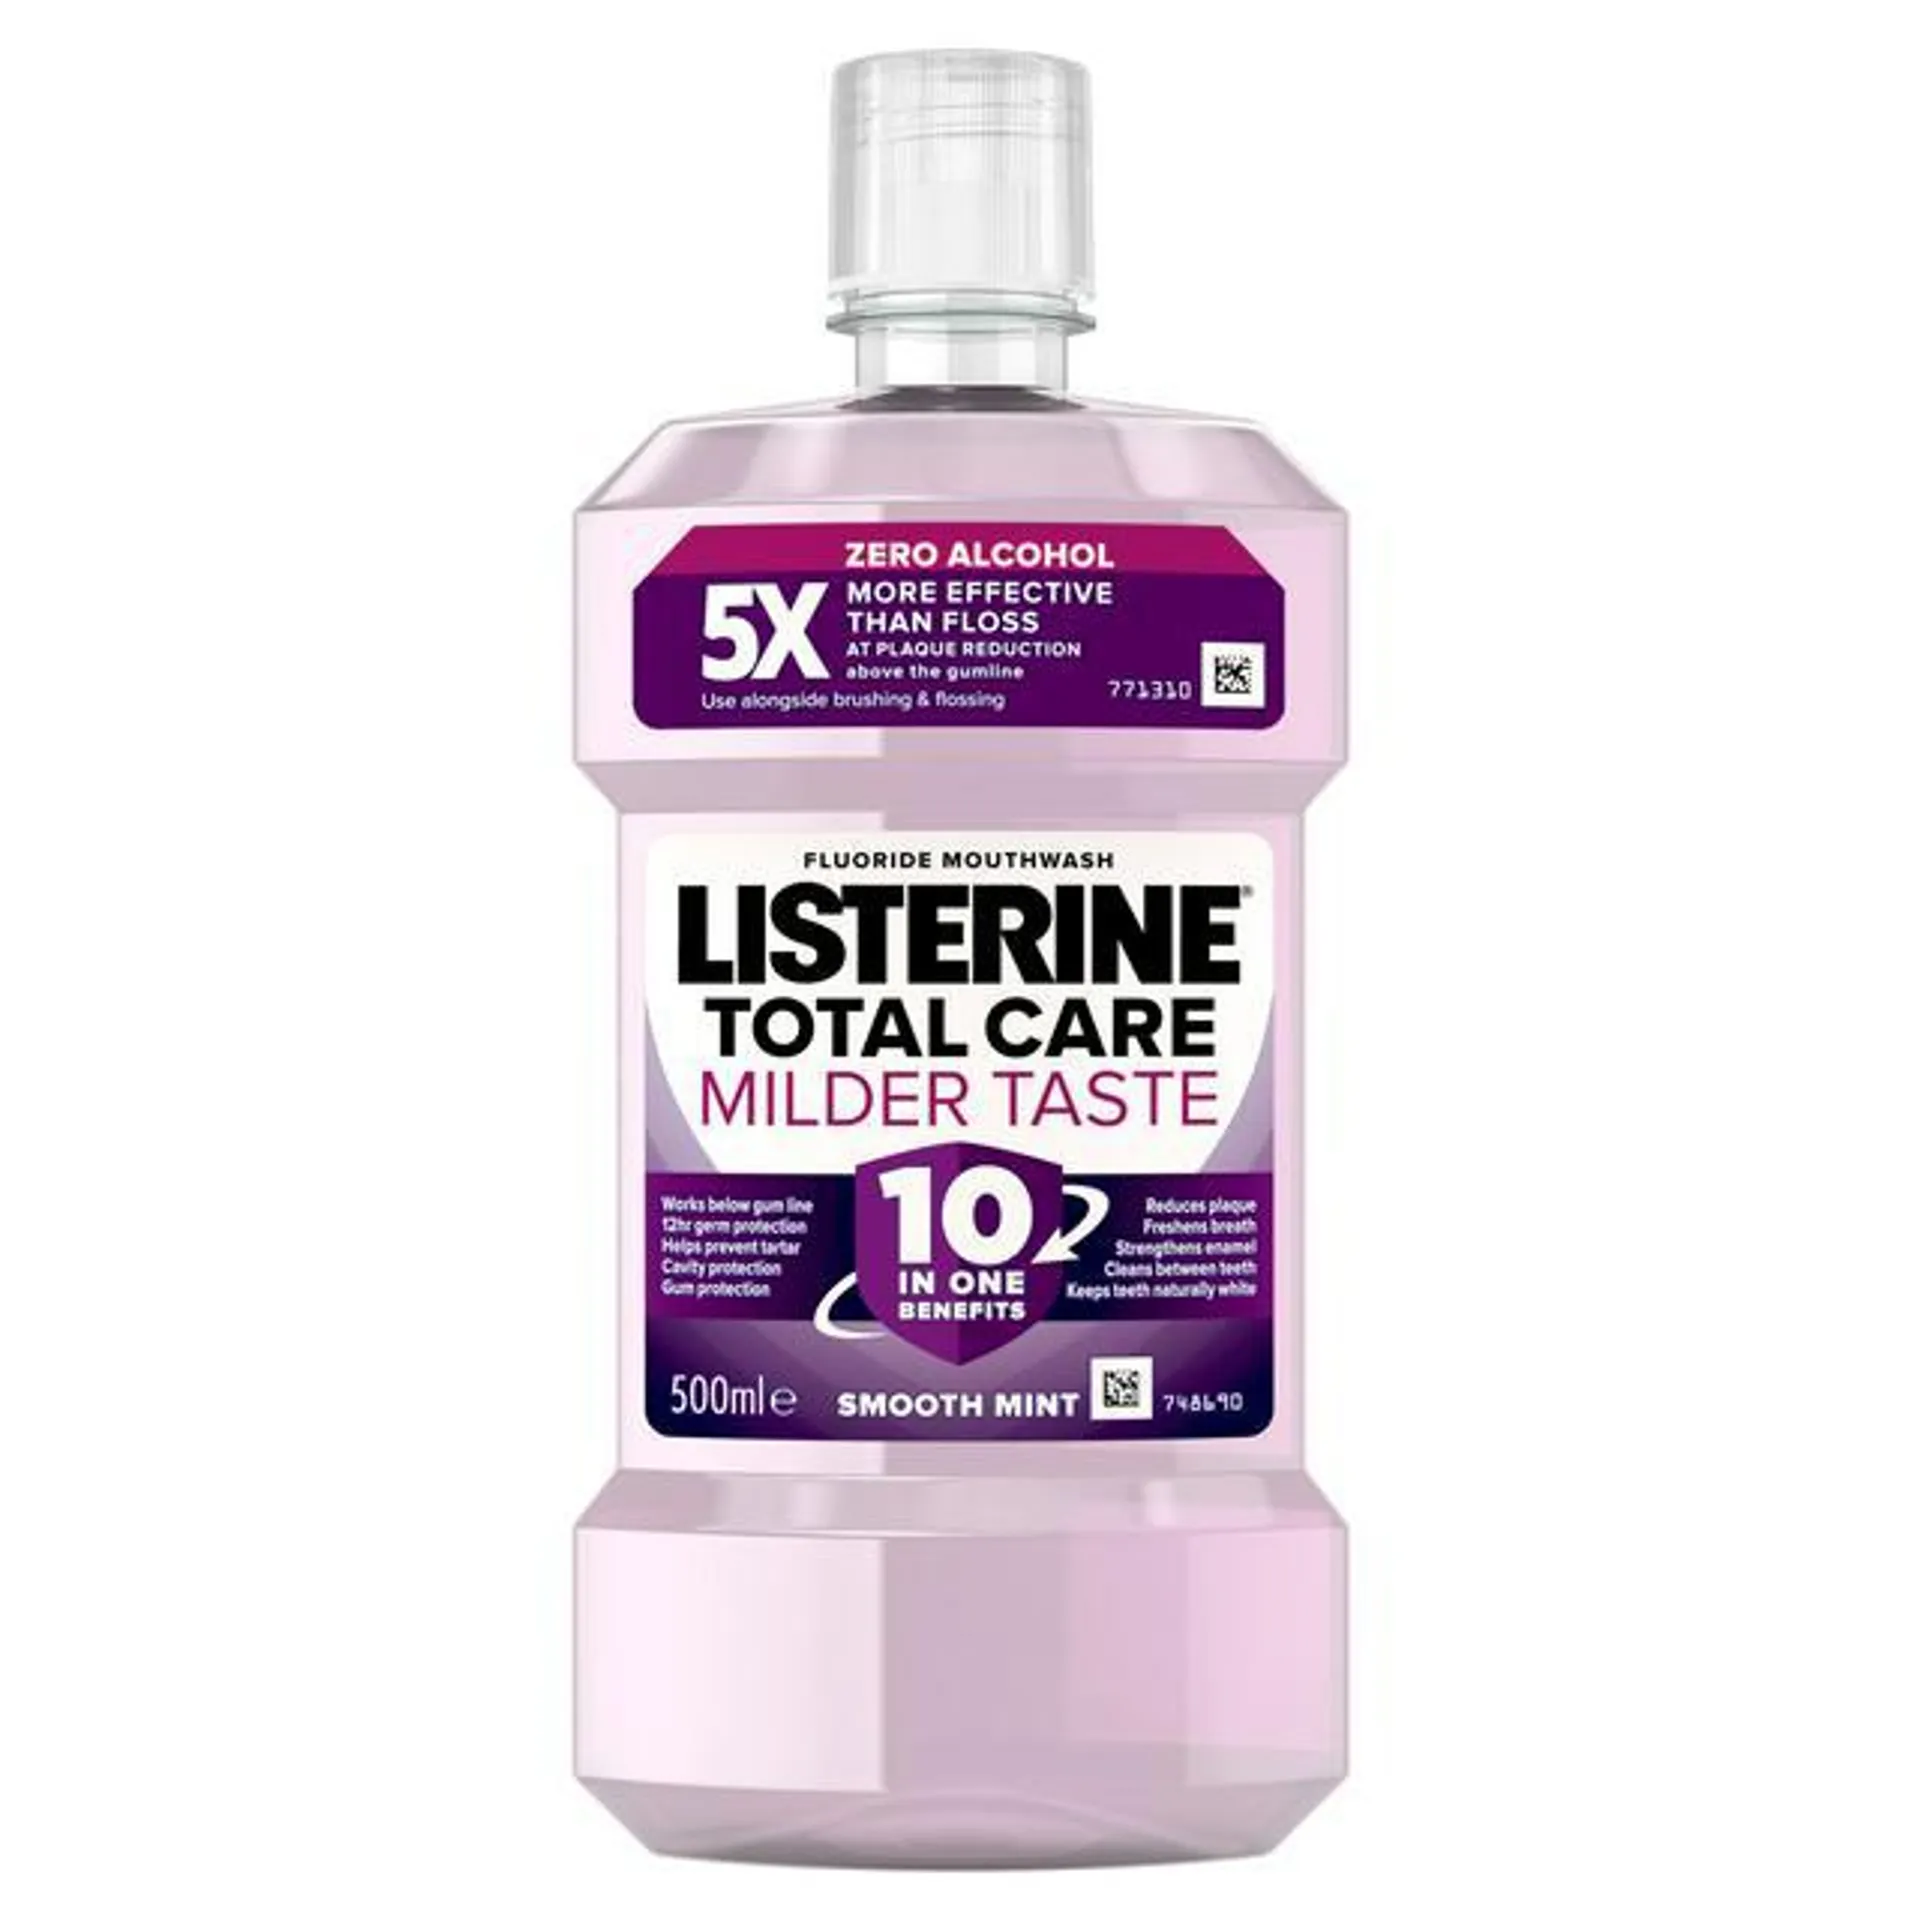 Listerine Total Care Milder Taste Mouthwash 500ml